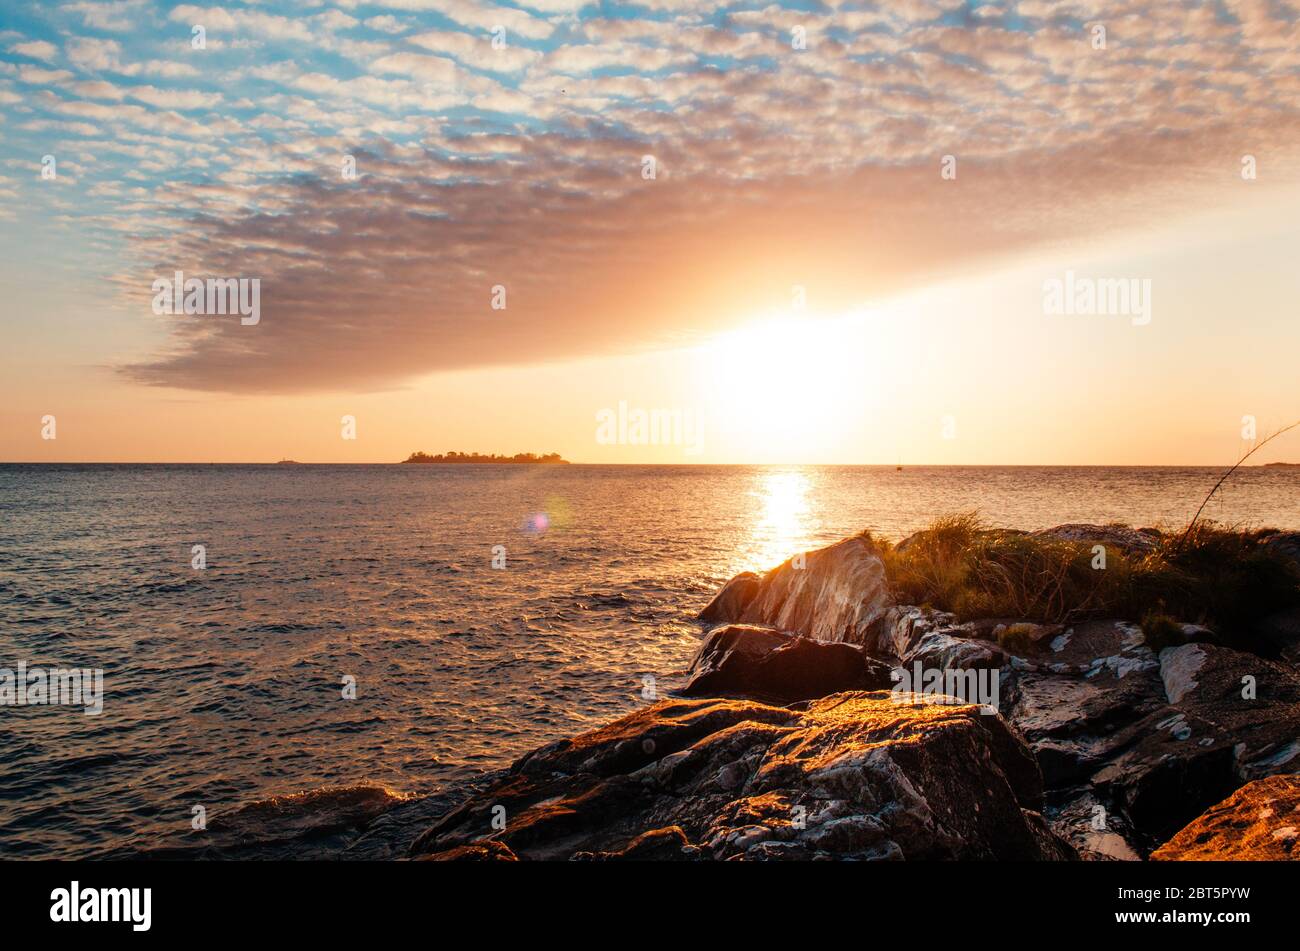 A breathless capture of the golden hour in Colonia Del Sacramento, Uruguay with a view to Rio De La Plata. Stock Photo